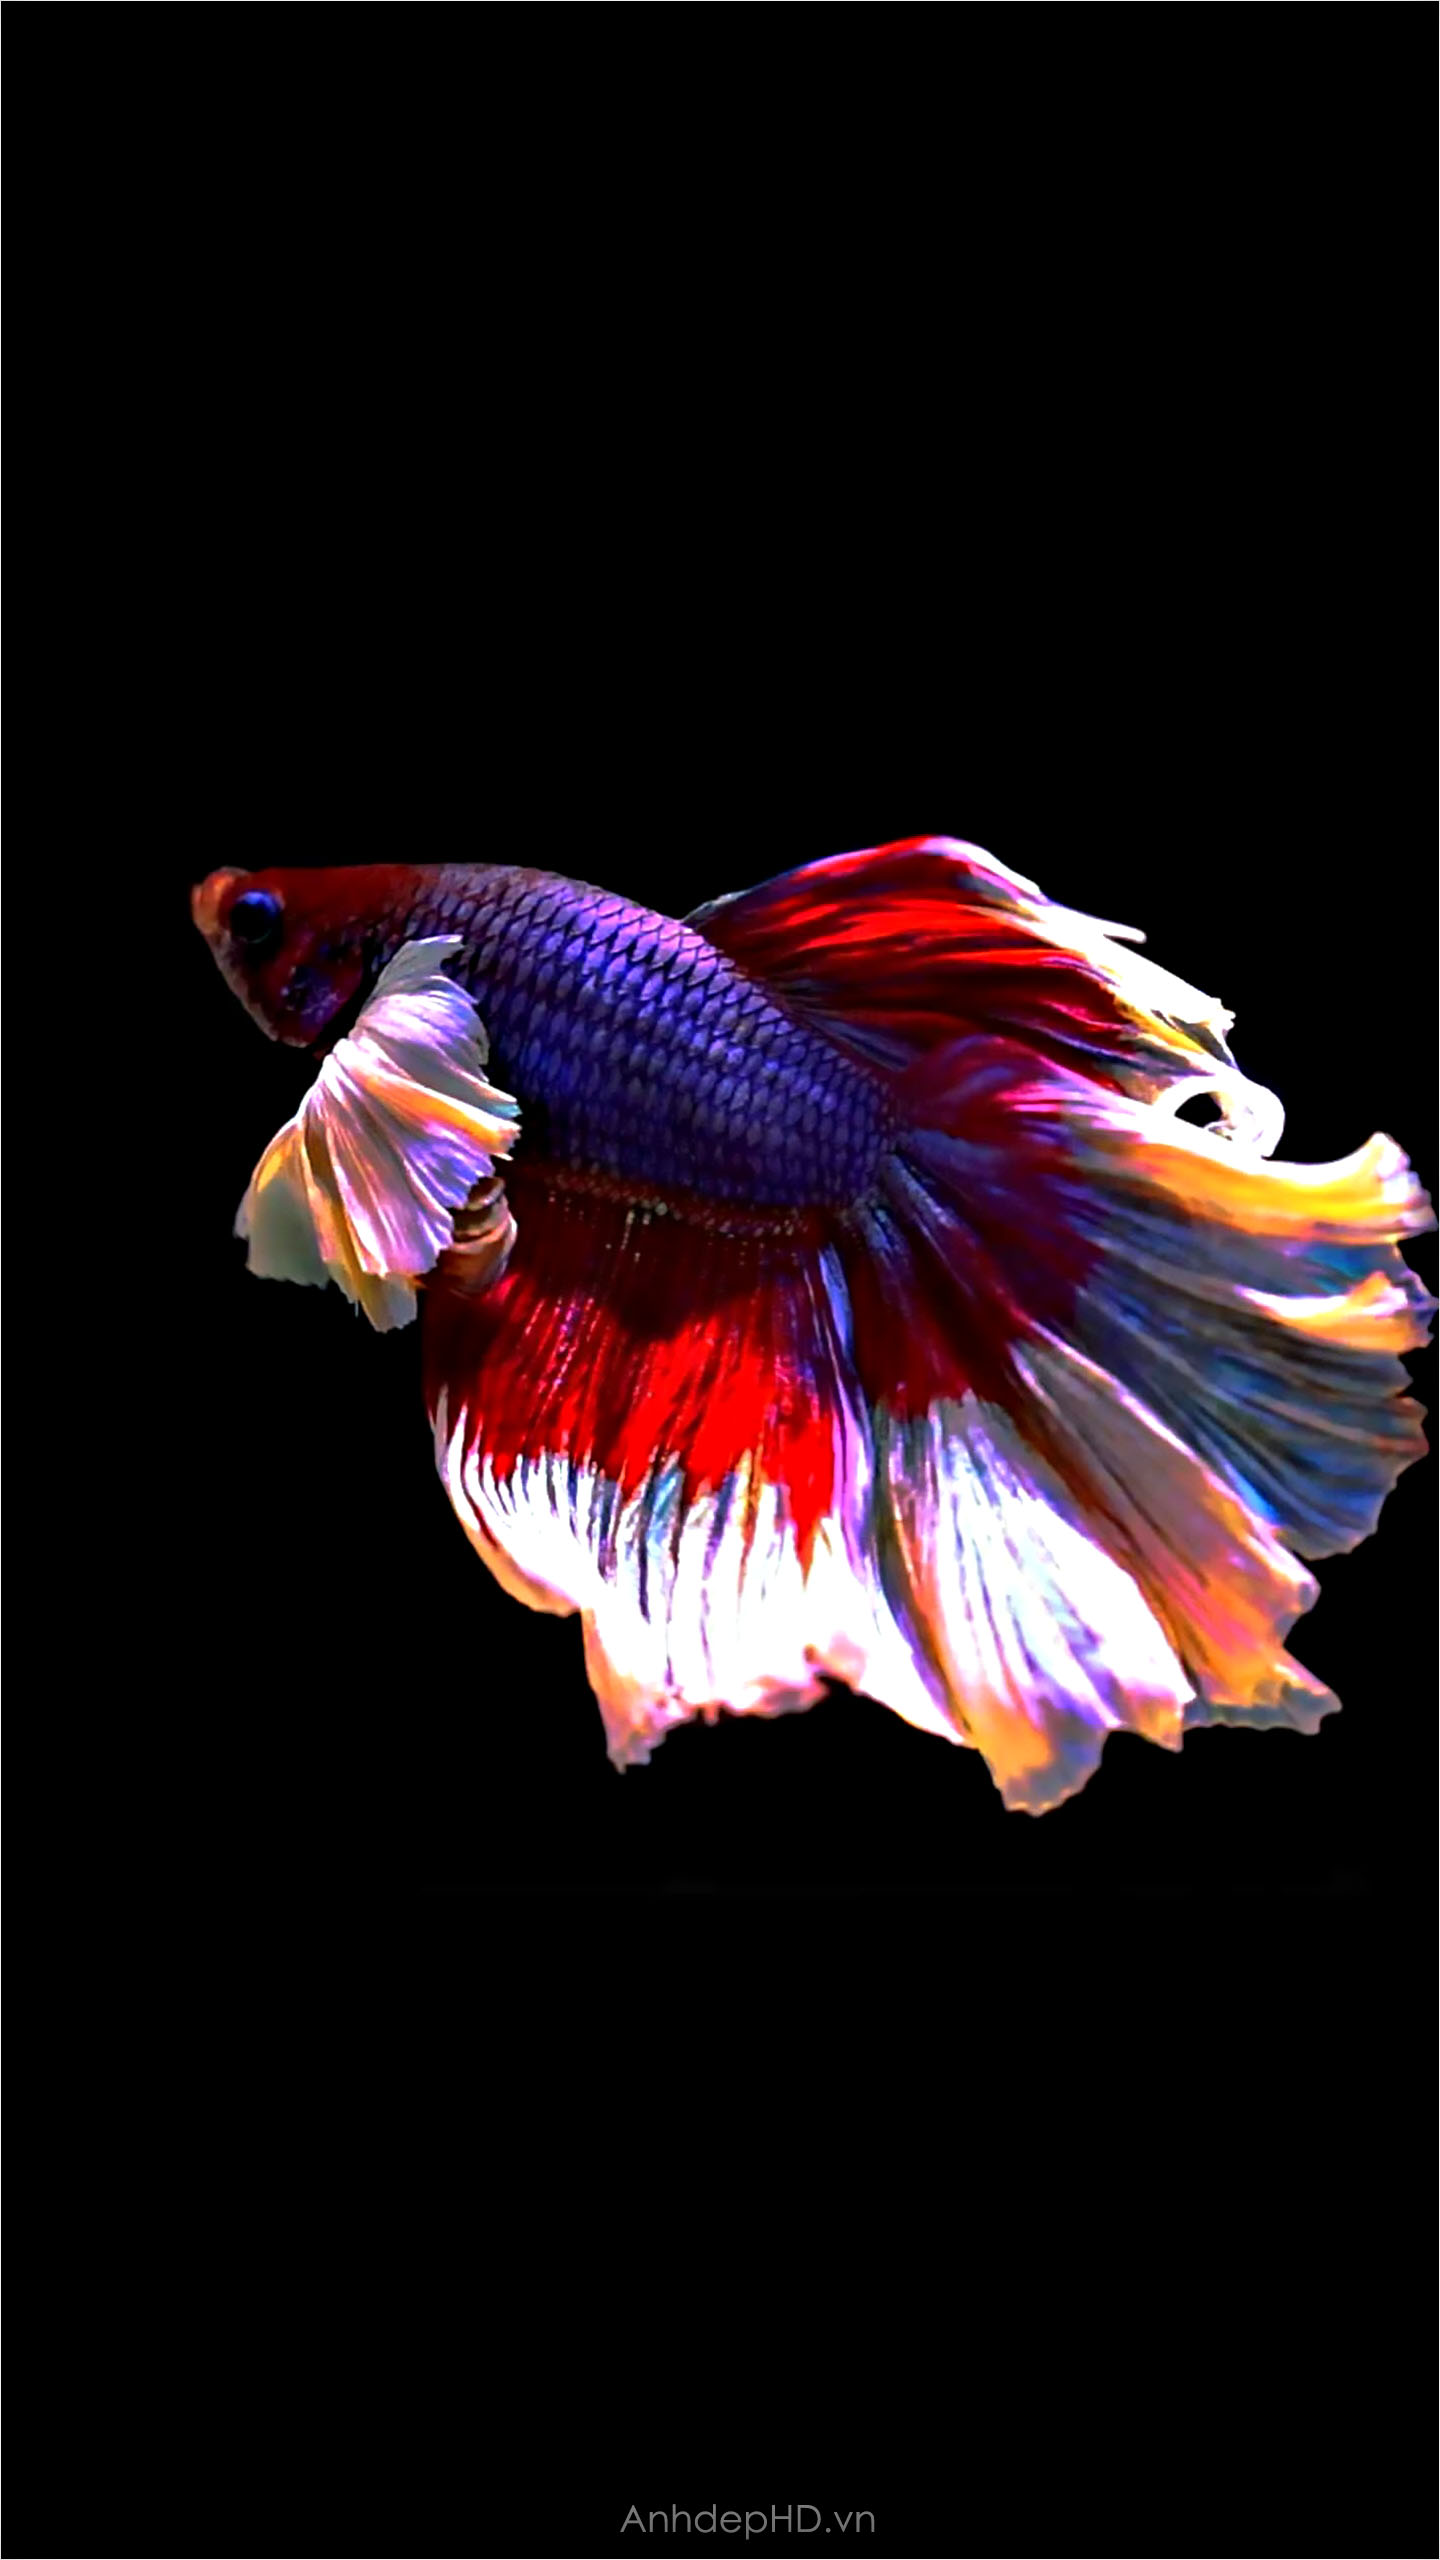 100.000+ ảnh đẹp nhất về Cá Koi · Tải xuống miễn phí 100% · Ảnh có sẵn của  Pexels